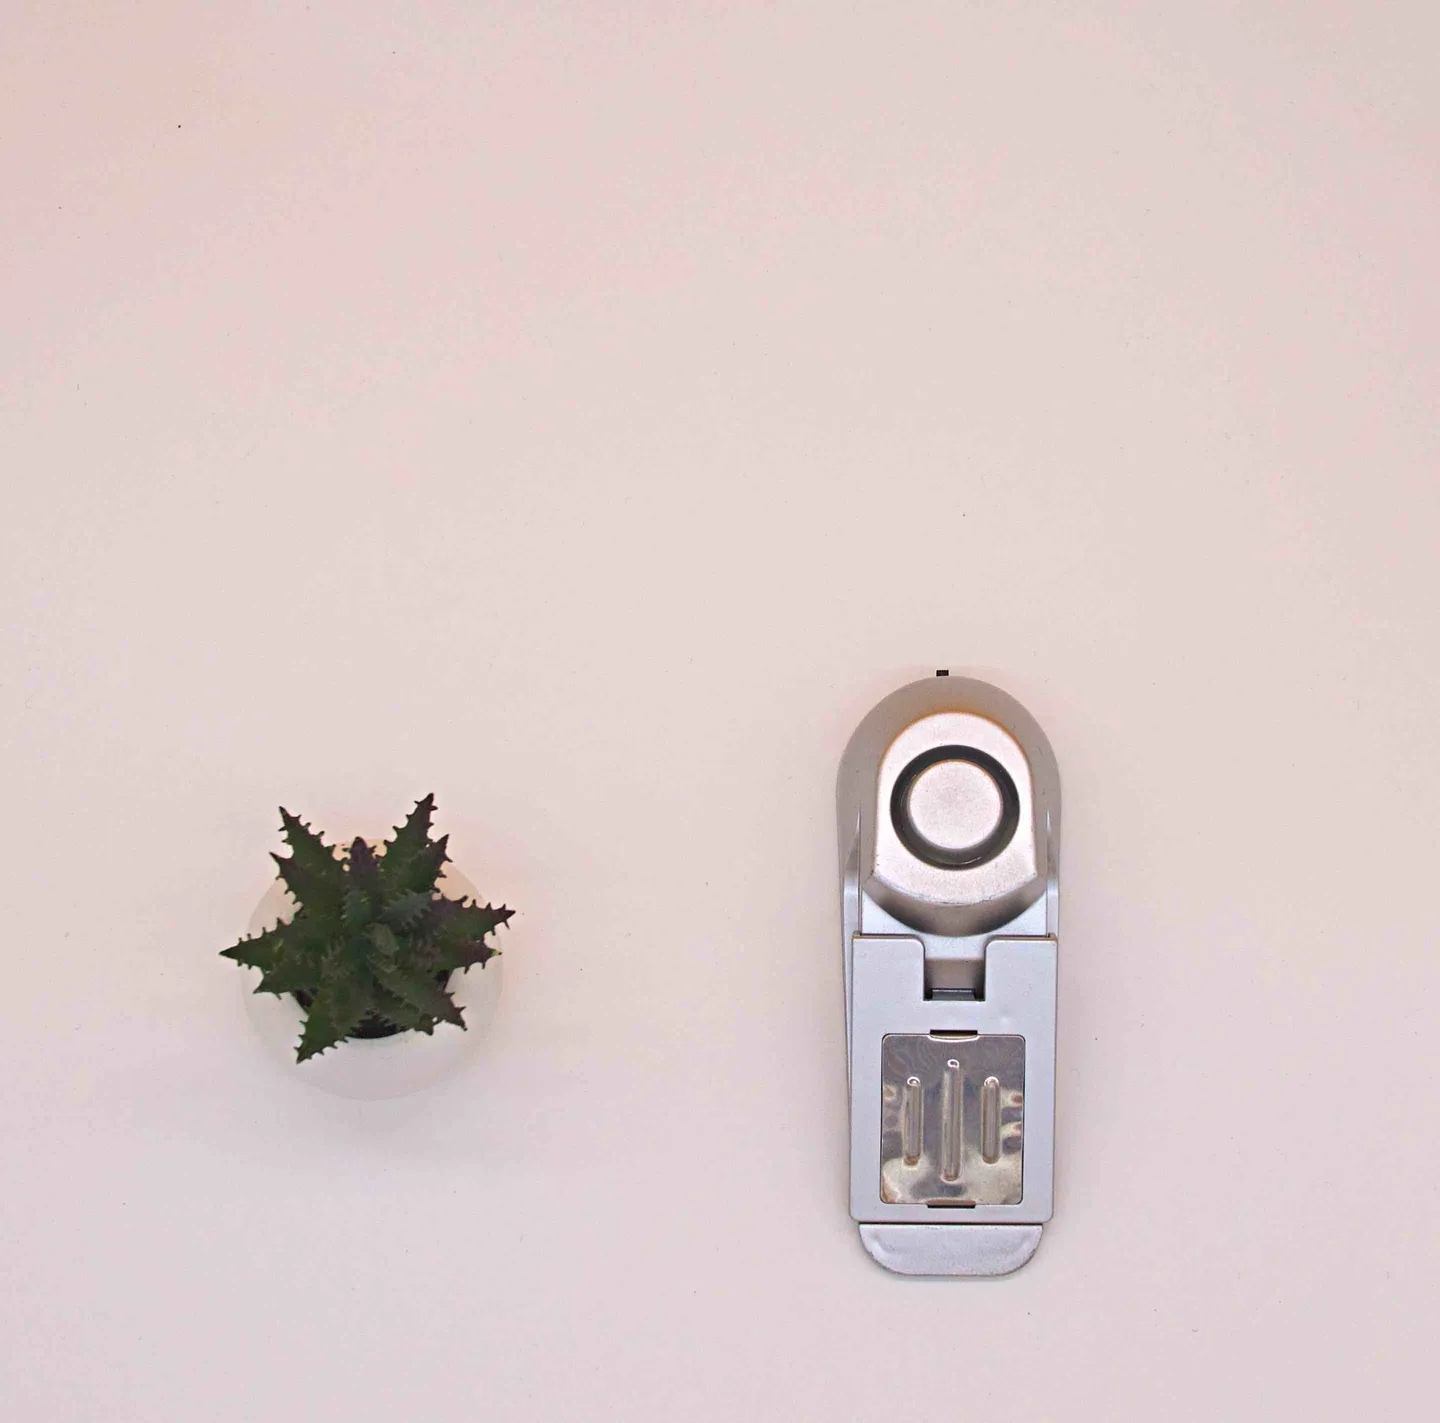 Alarmas y linternas - Bloqueo de puerta con alarma de 120dB... ¡La alarma antirrobo simple y efectiva!